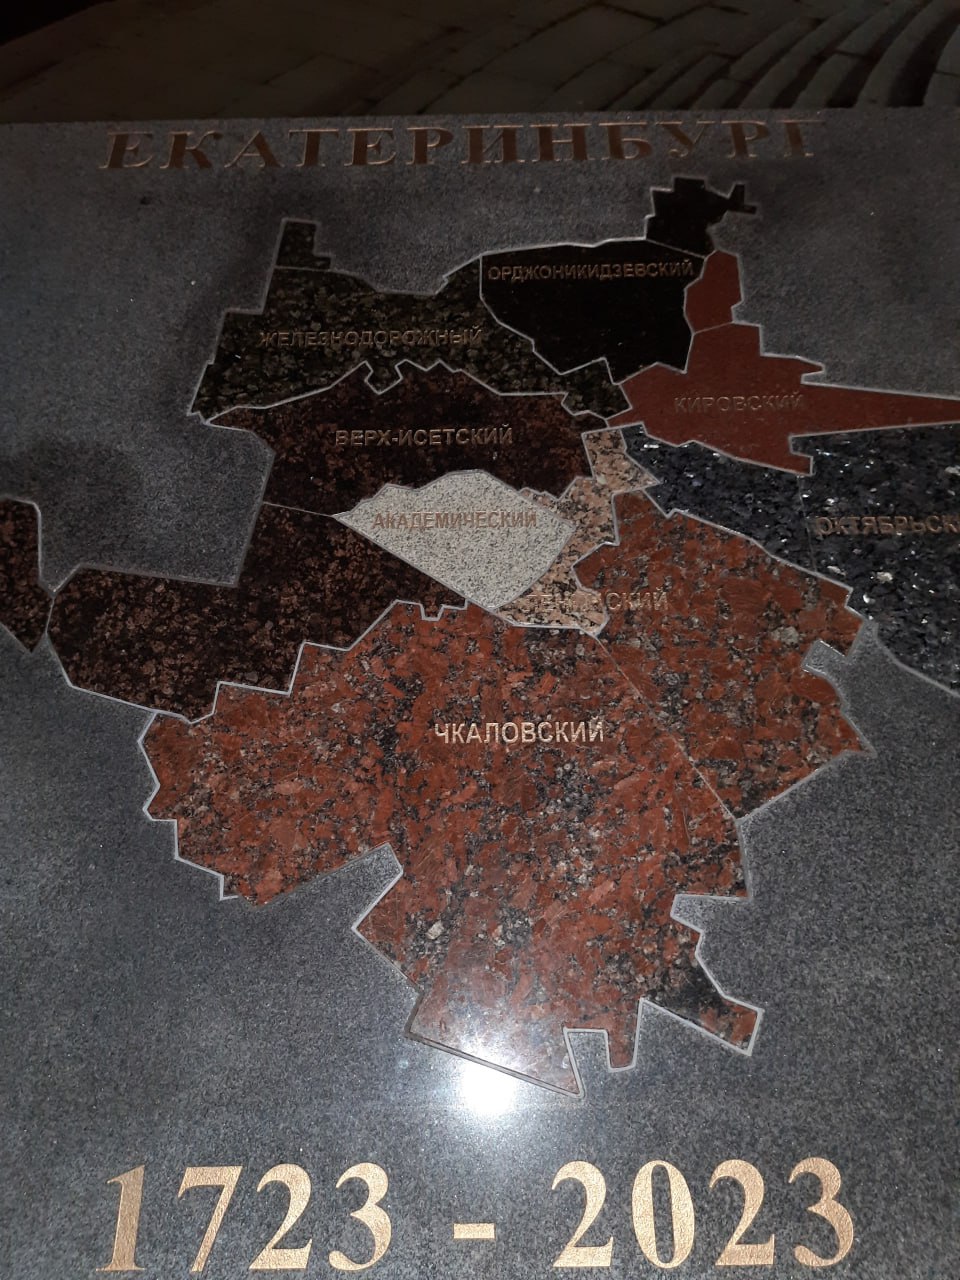 Новый День: На Плотинке появилась гранитная карта Екатеринбурга (ФОТО)